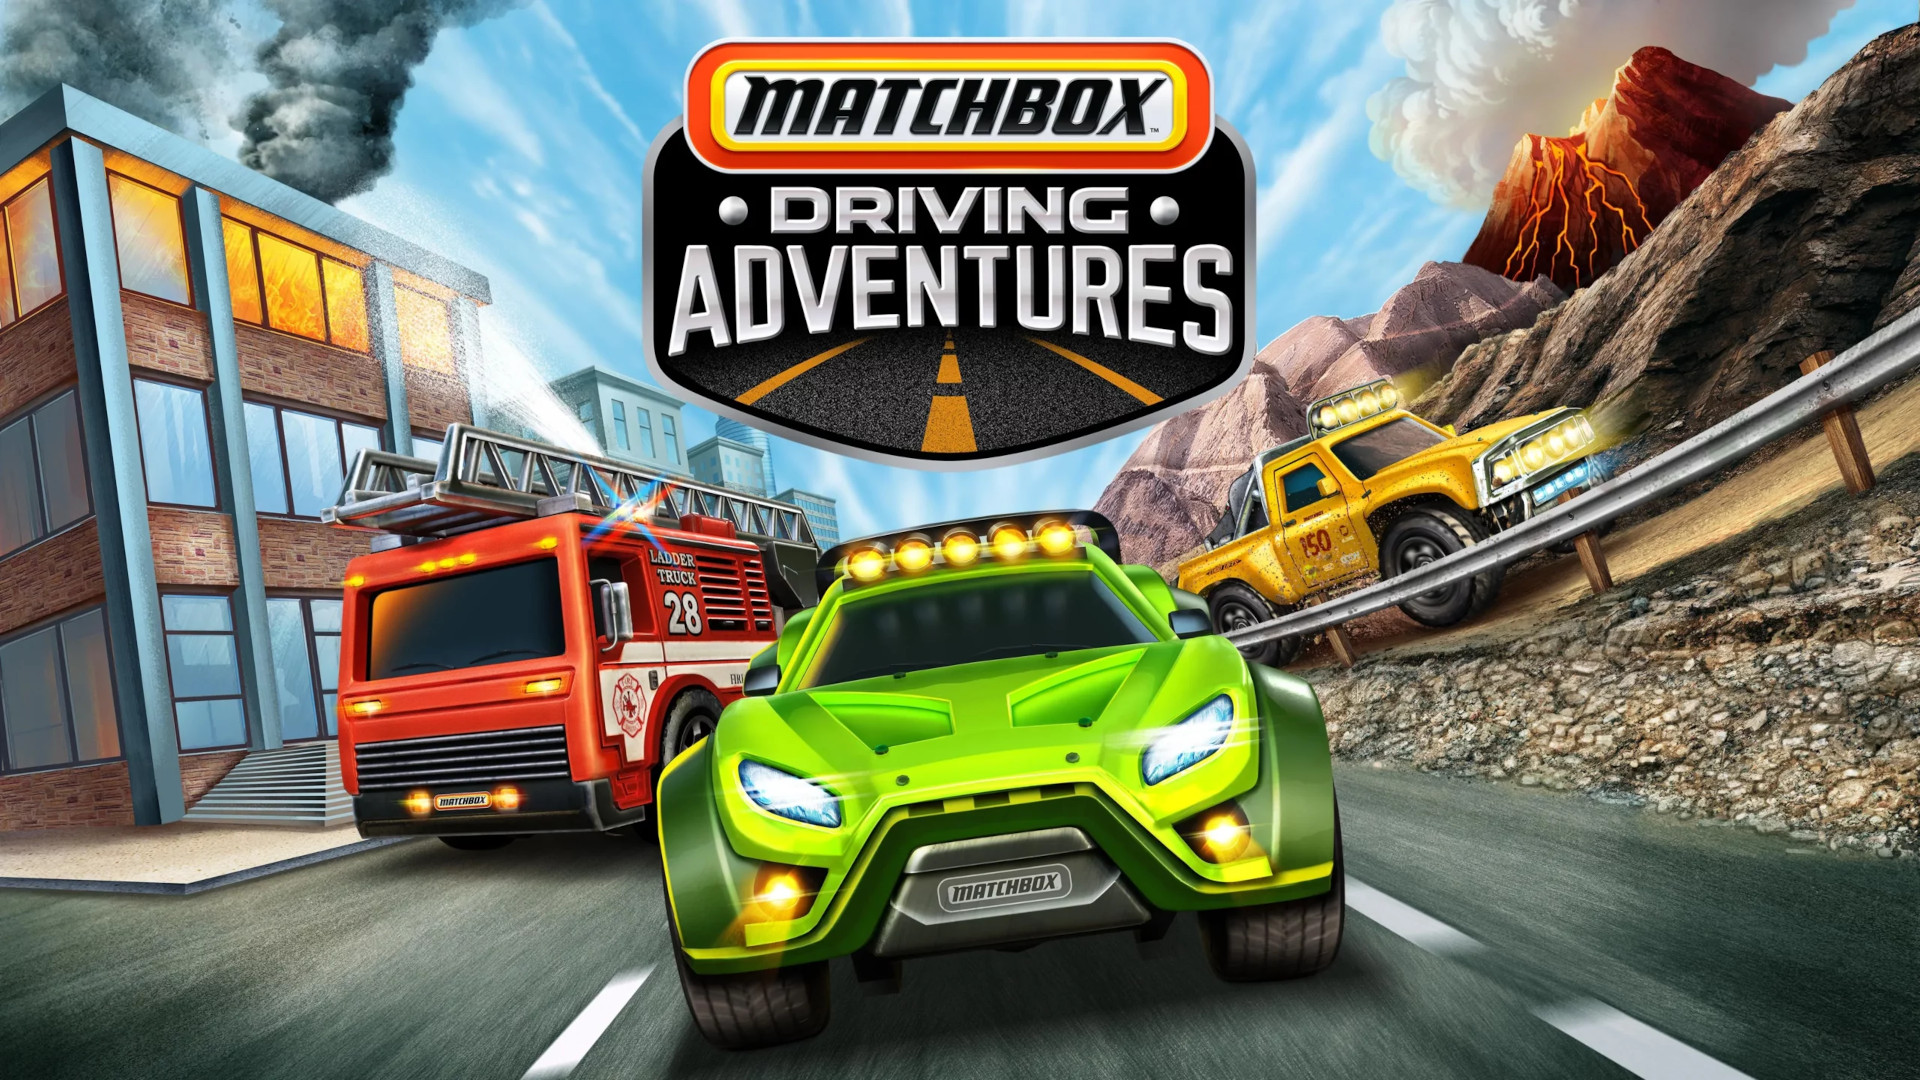 Matchbox Driving Adventures key art